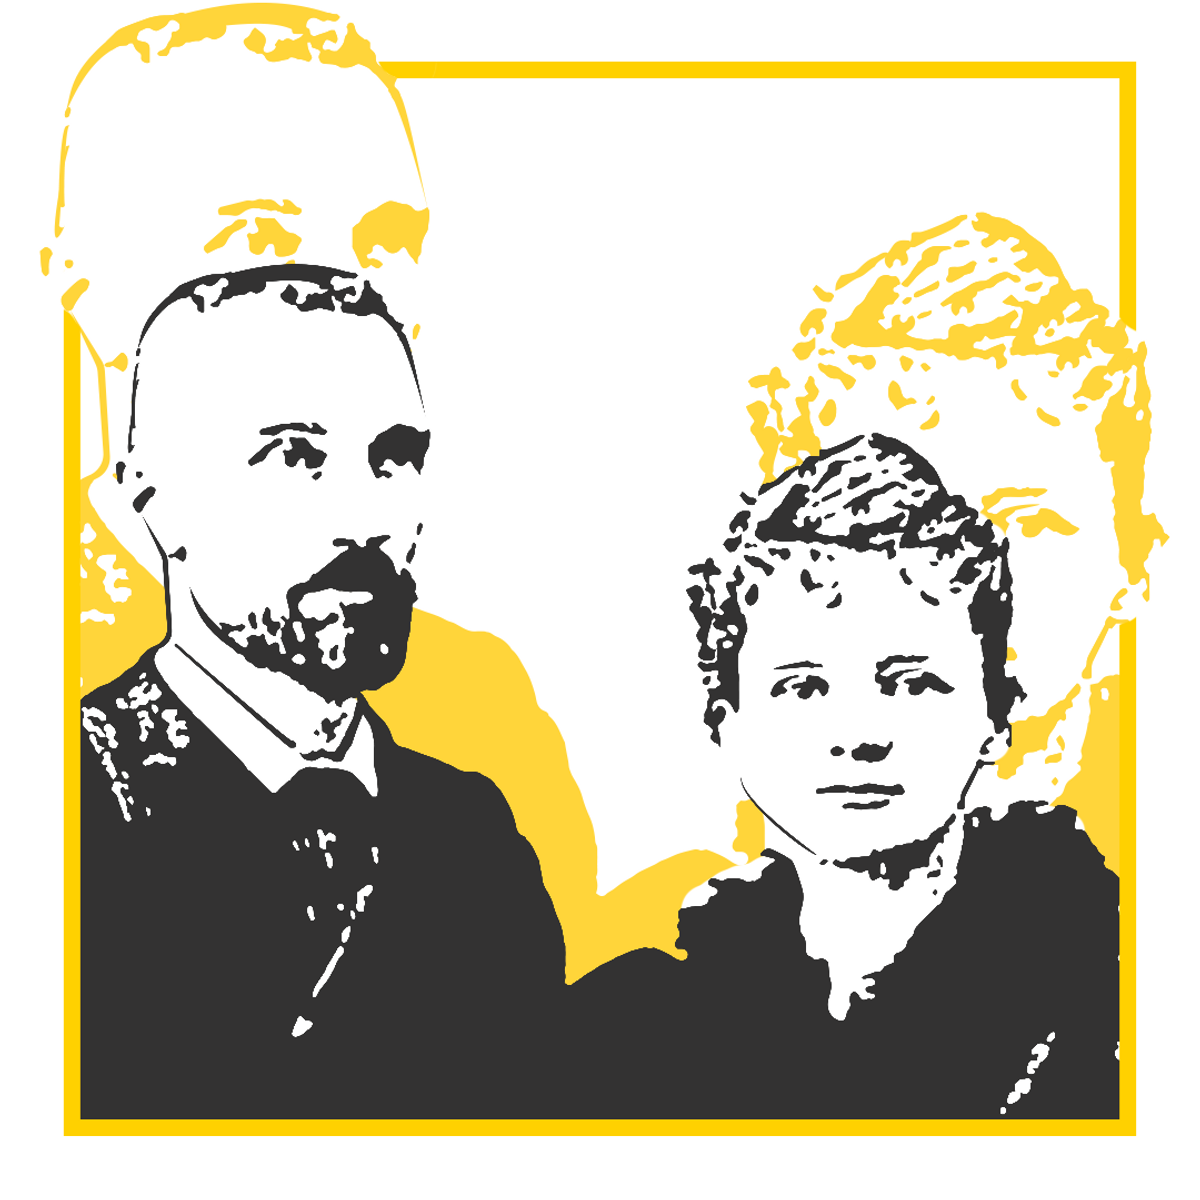 1898 - Pierre-et-Marie-Curie